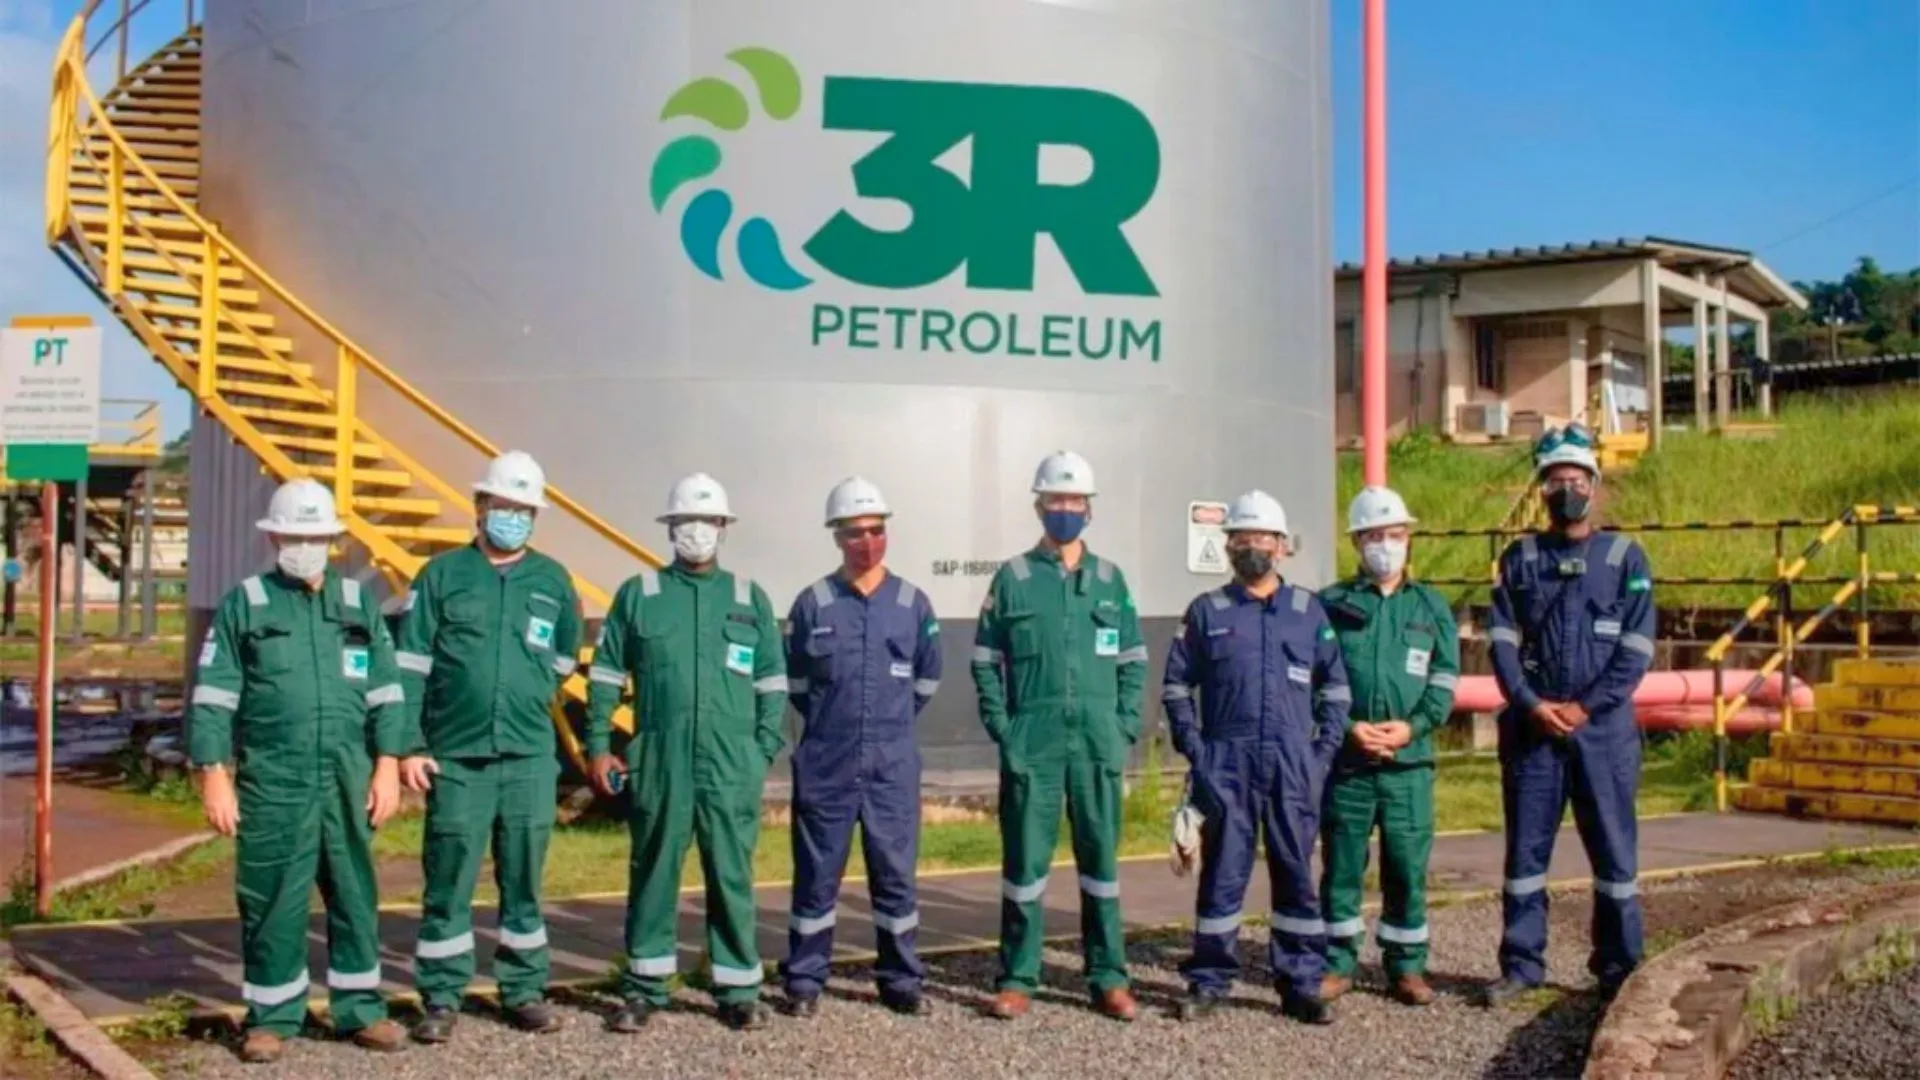 Colaboradores da 3R Petroleum